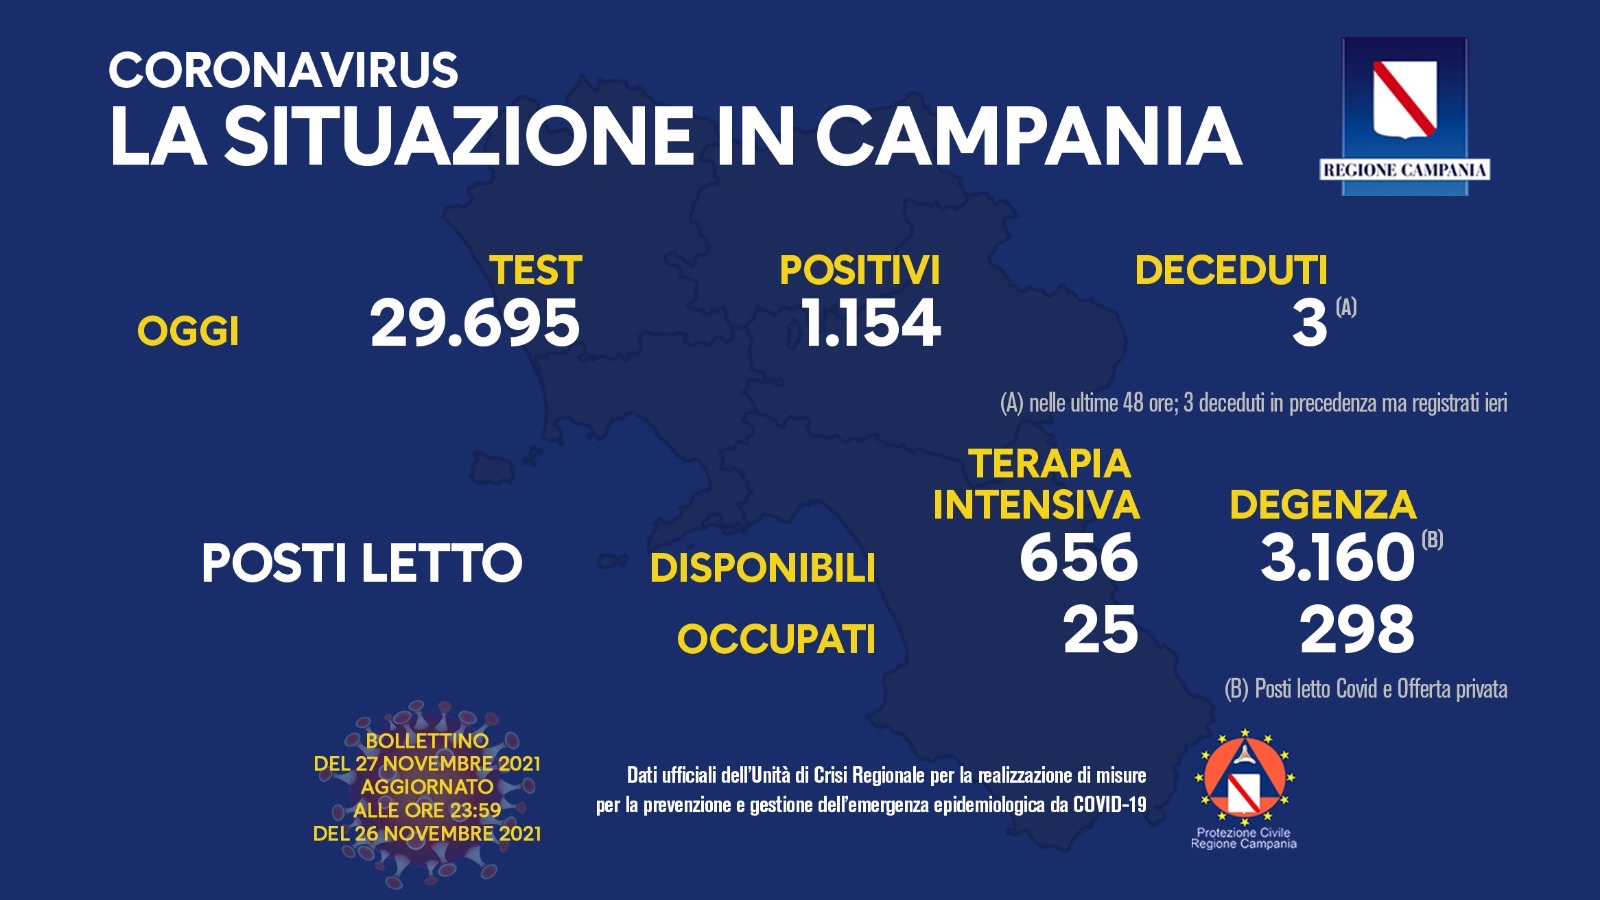 Regione Campania: Coronavirus, Unità di Crisi, Bollettino, 1154 casi positivi, 3 decessi